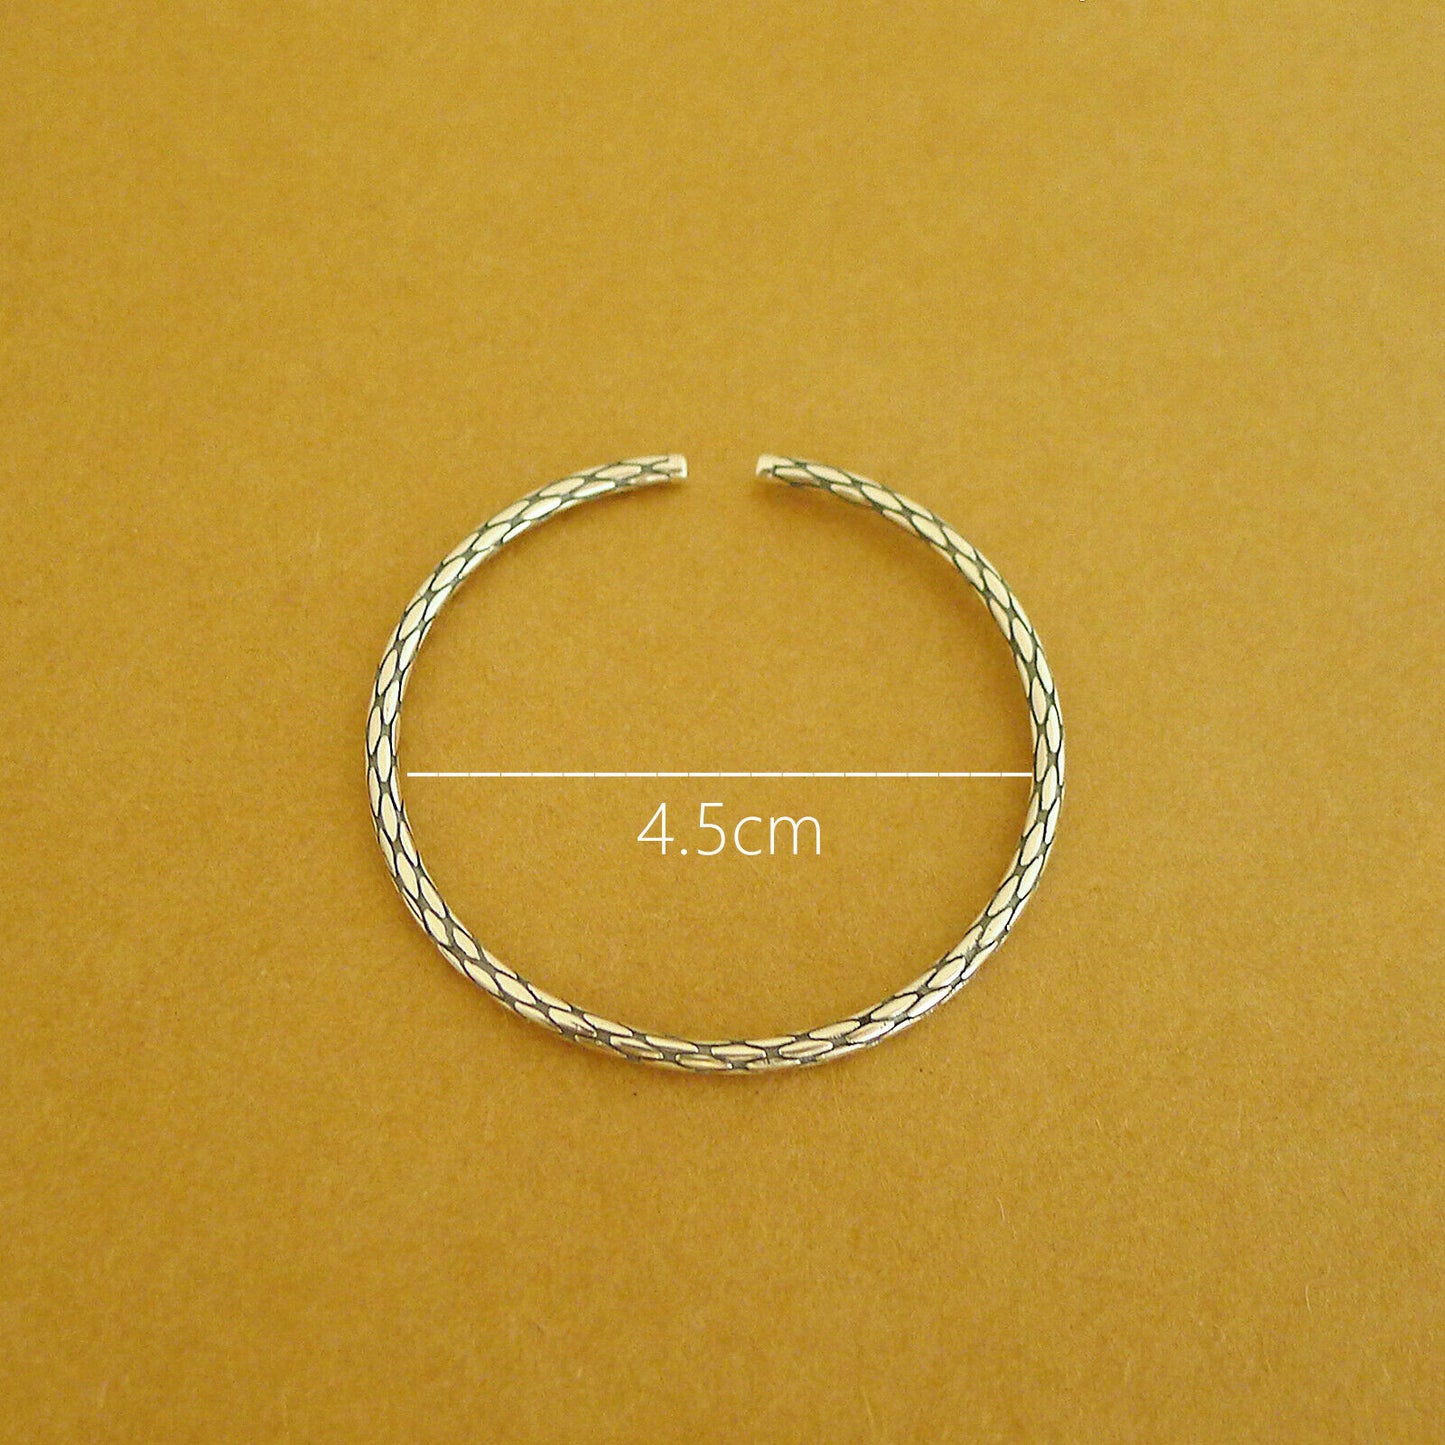 Sterling Silver Small Wrist Solid Snake Knot Cuff Bangle 15cm Band 5.1g - sugarkittenlondon